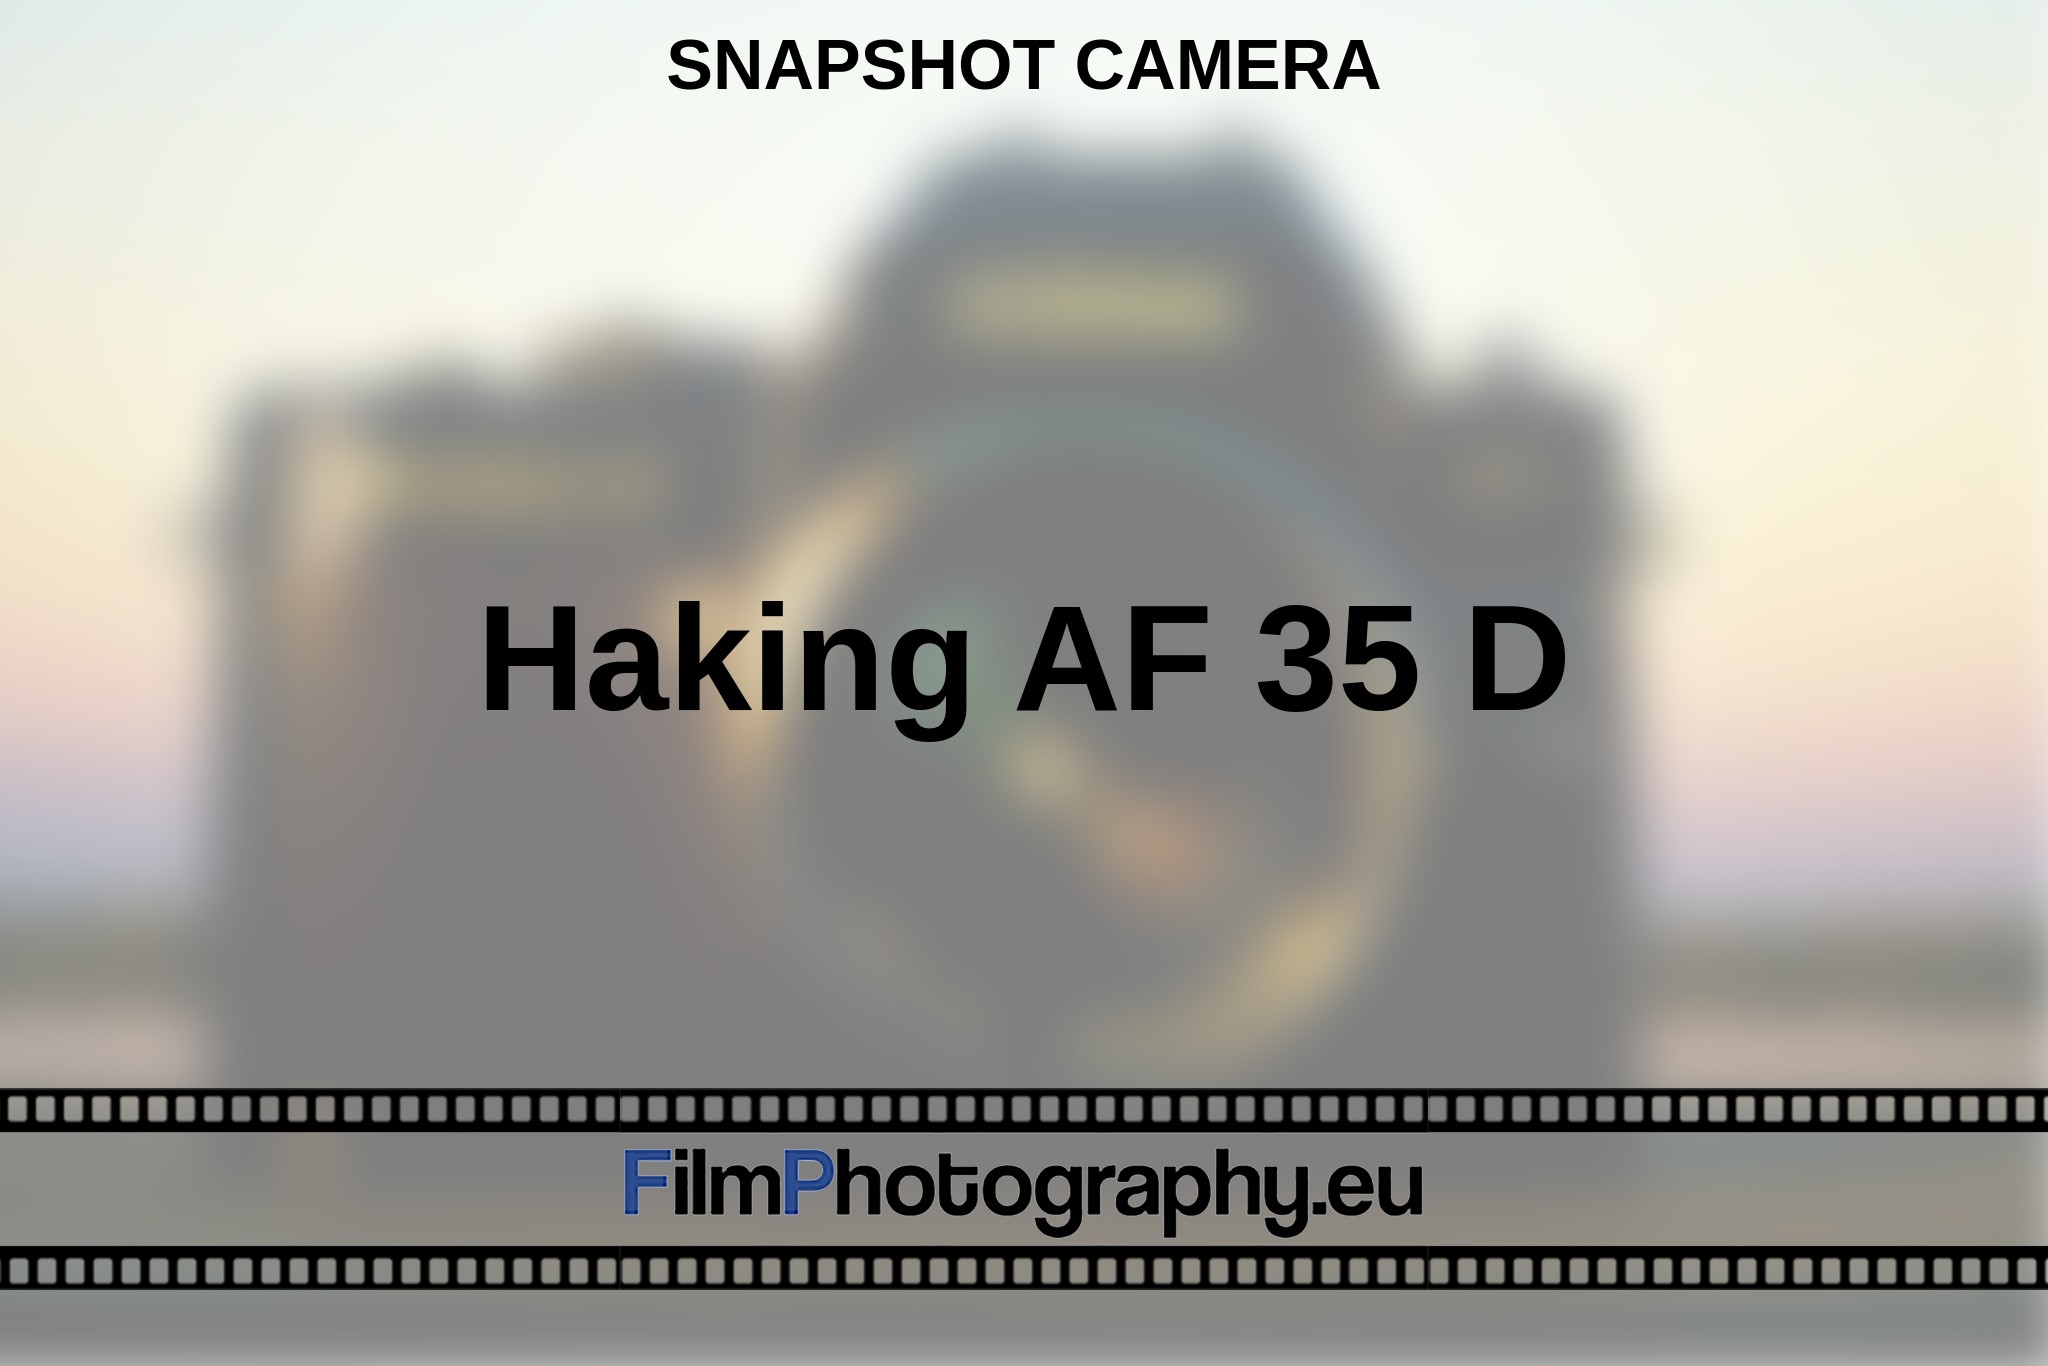 haking-af-35-d-snapshot-camera-en-bnv.jpg